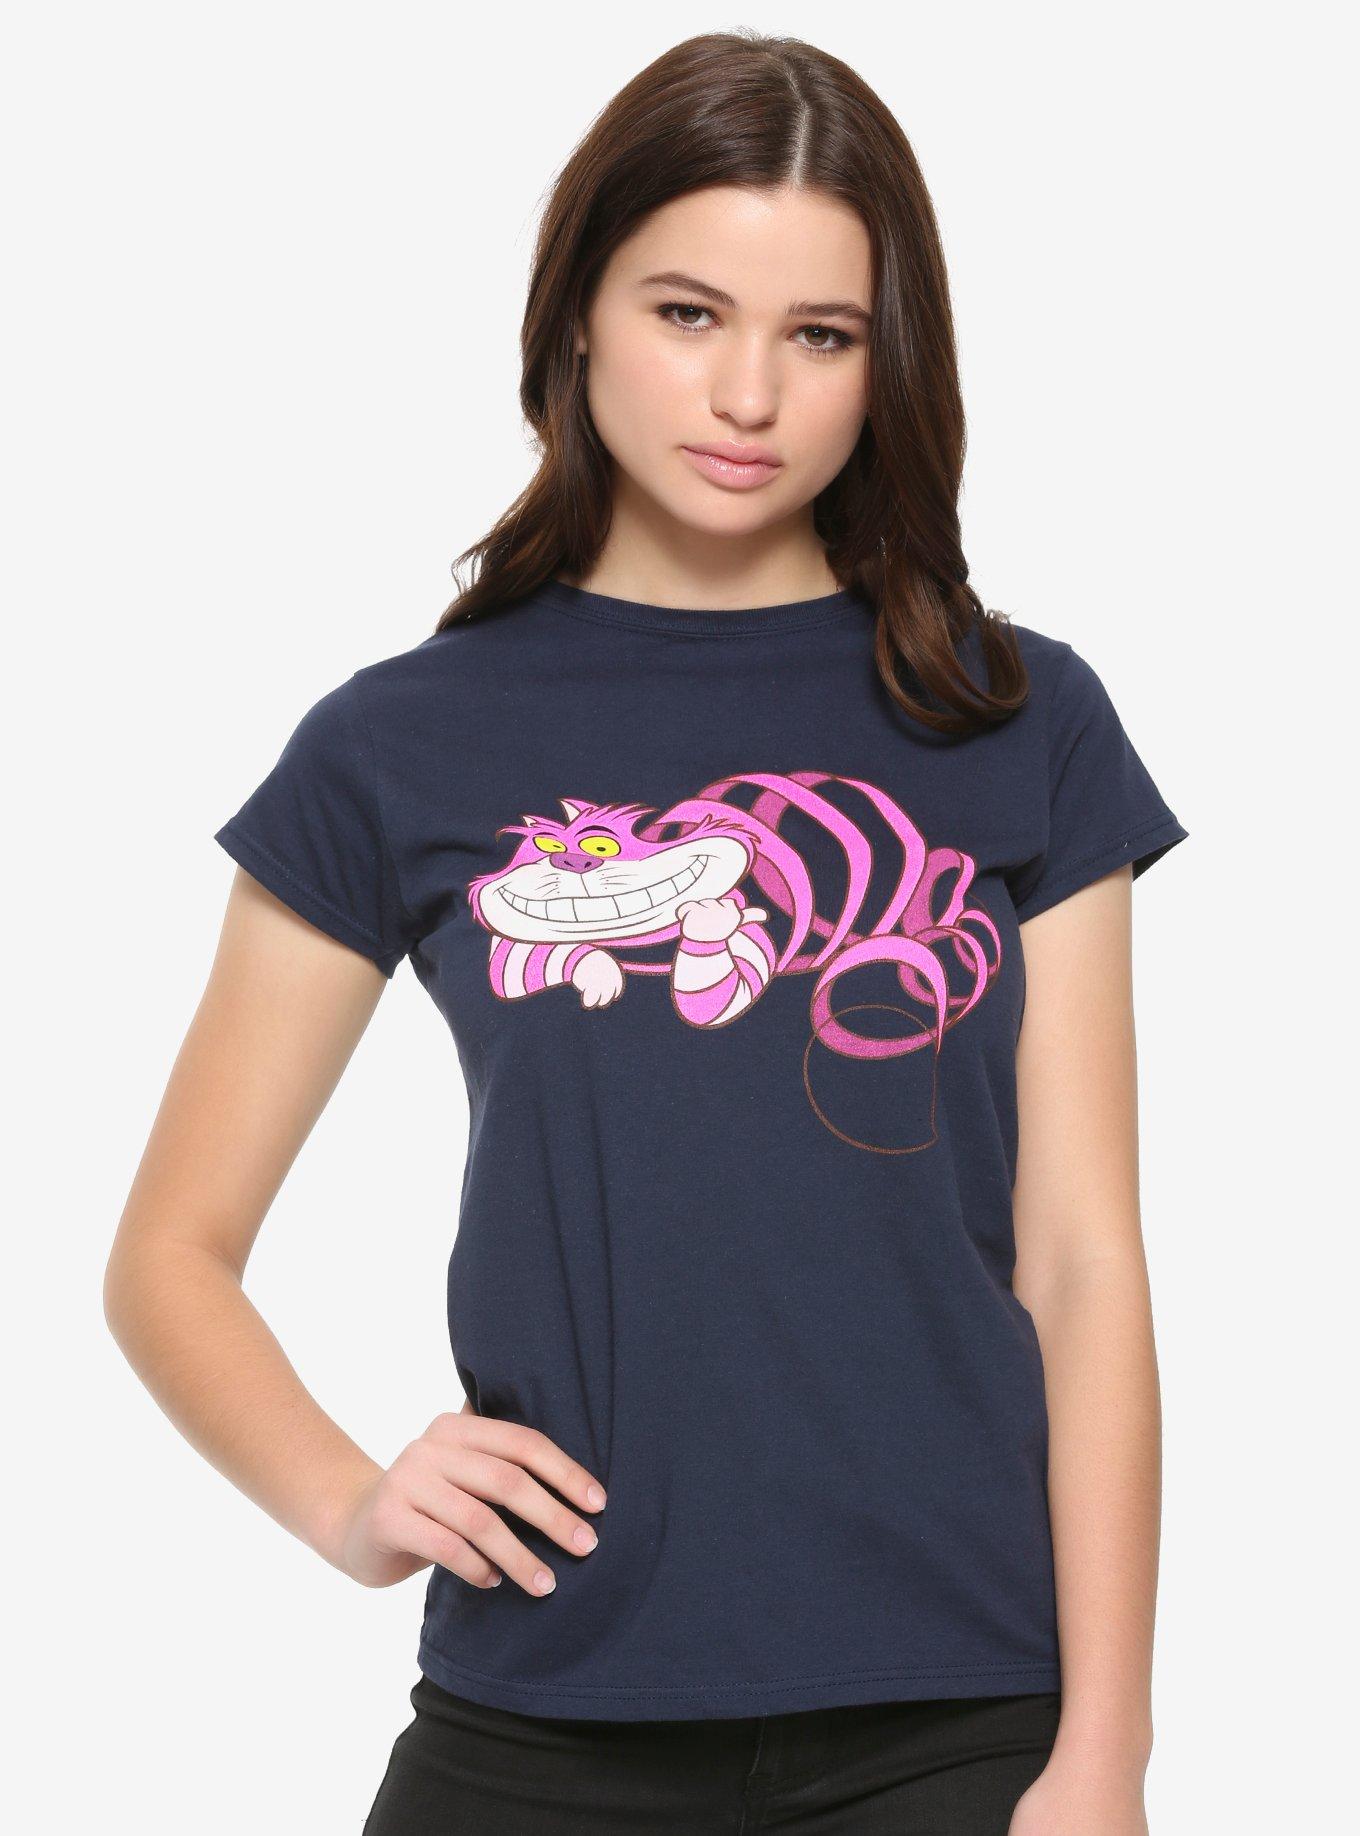 Disney Alice In Wonderland Cheshire Cat Spiral Girls T-Shirt, MAGENTA, hi-res